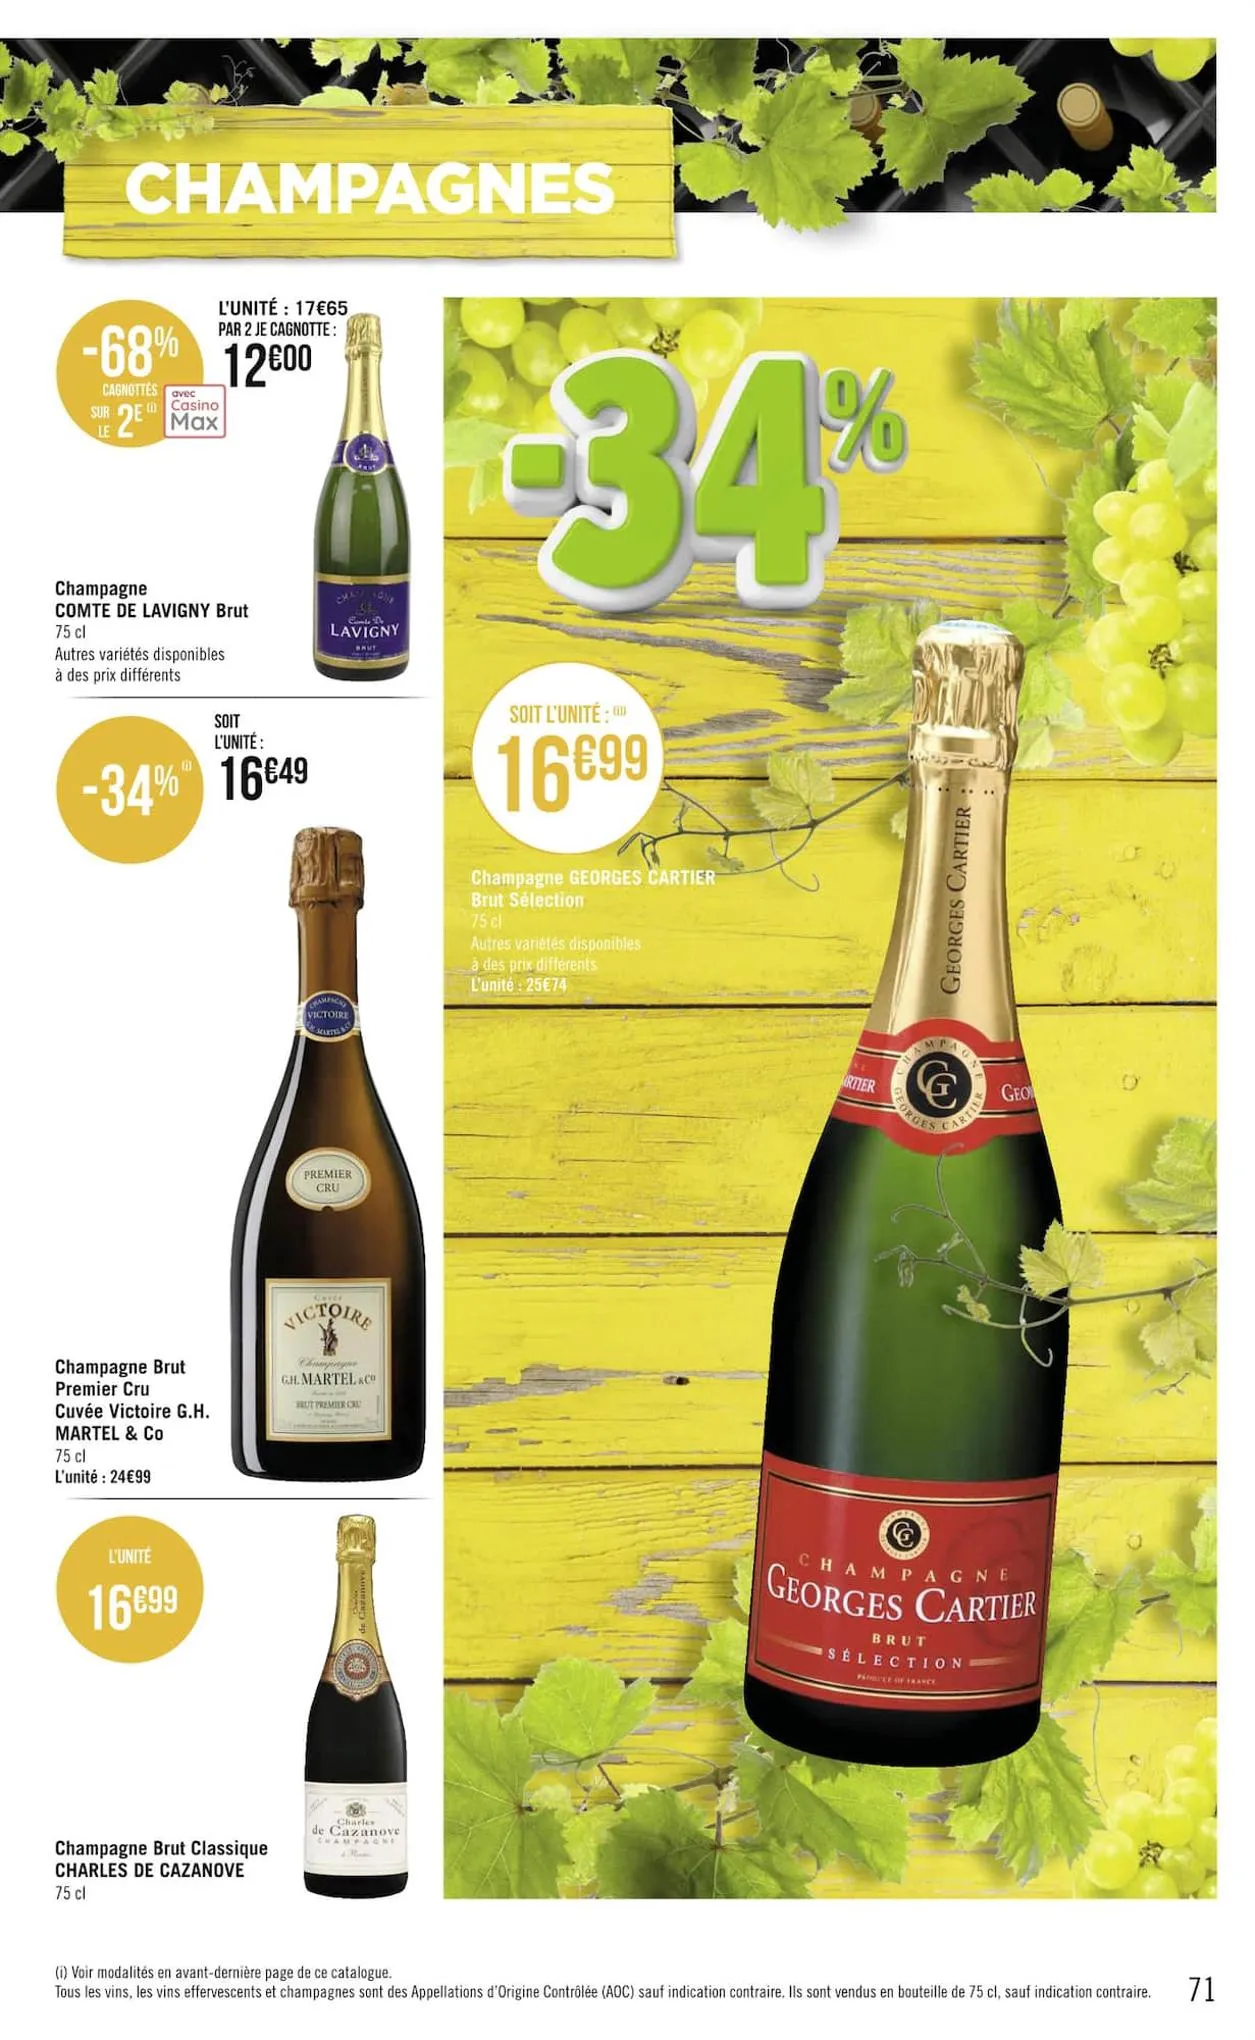 Catalogue Foire aux vins, page 00071